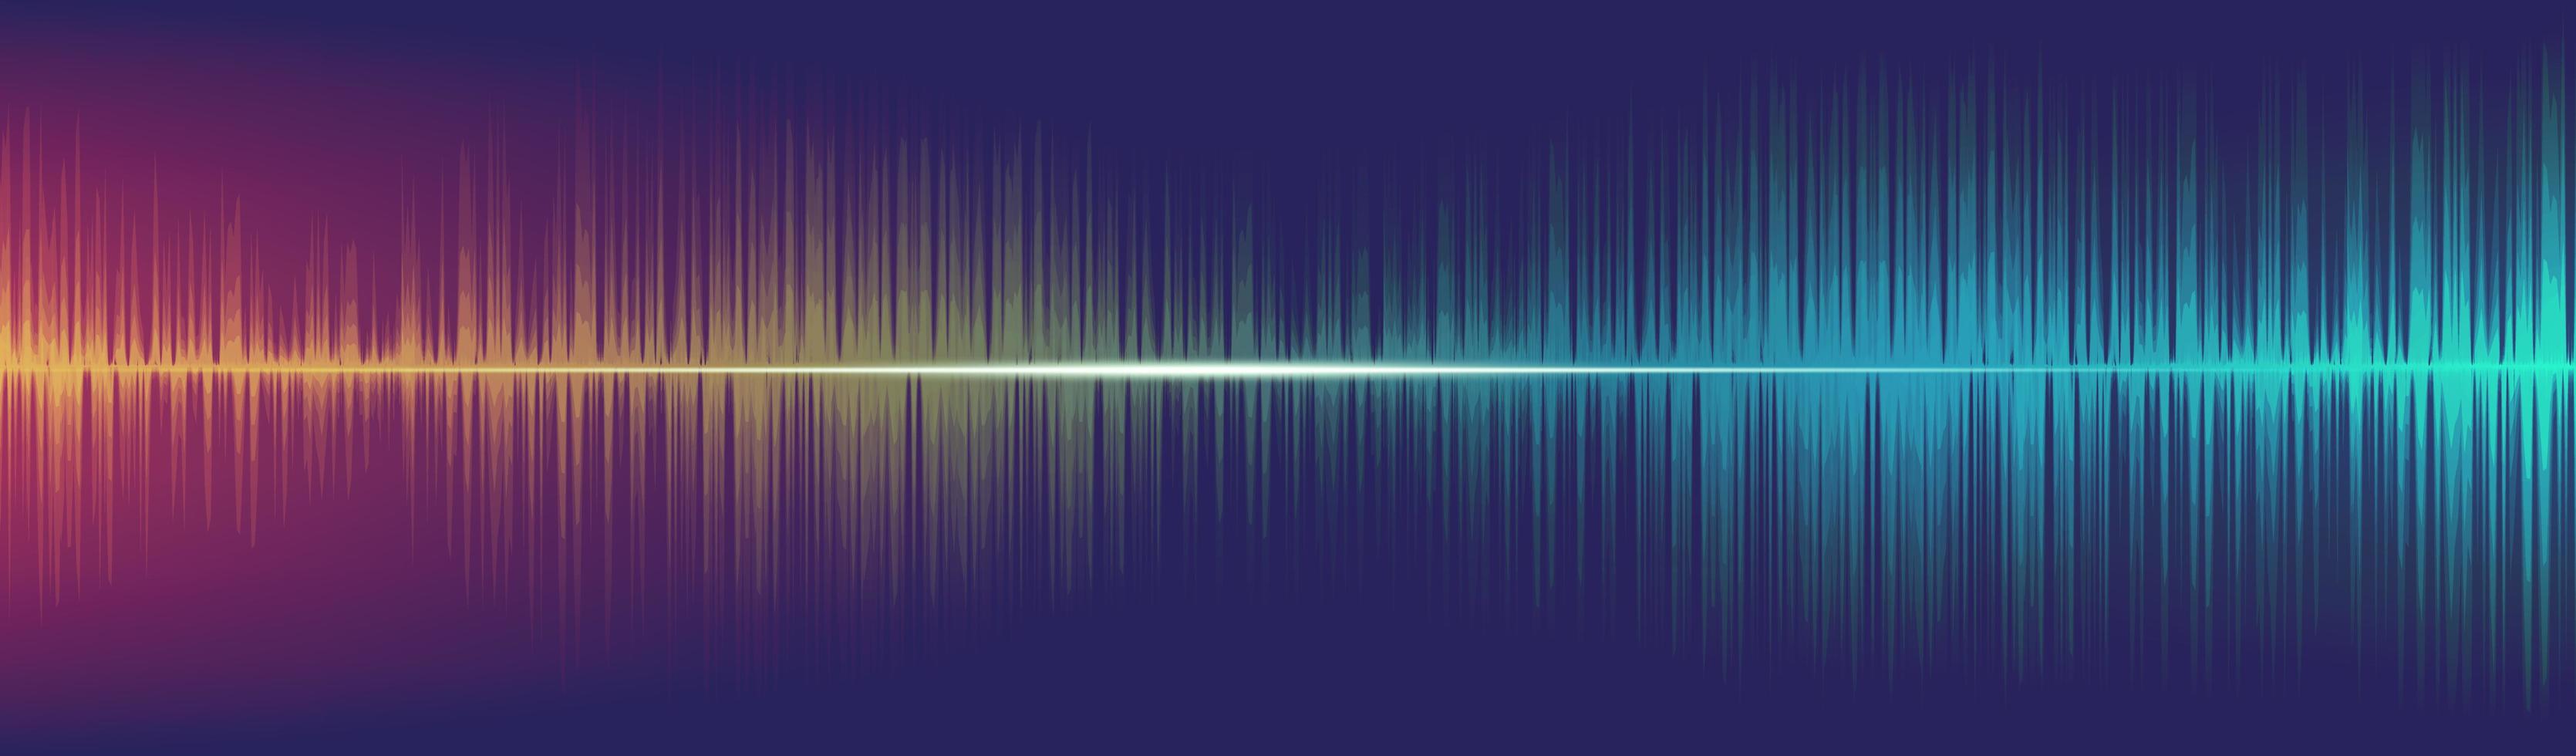 Equalizer Digital Sound Wave Background, vector